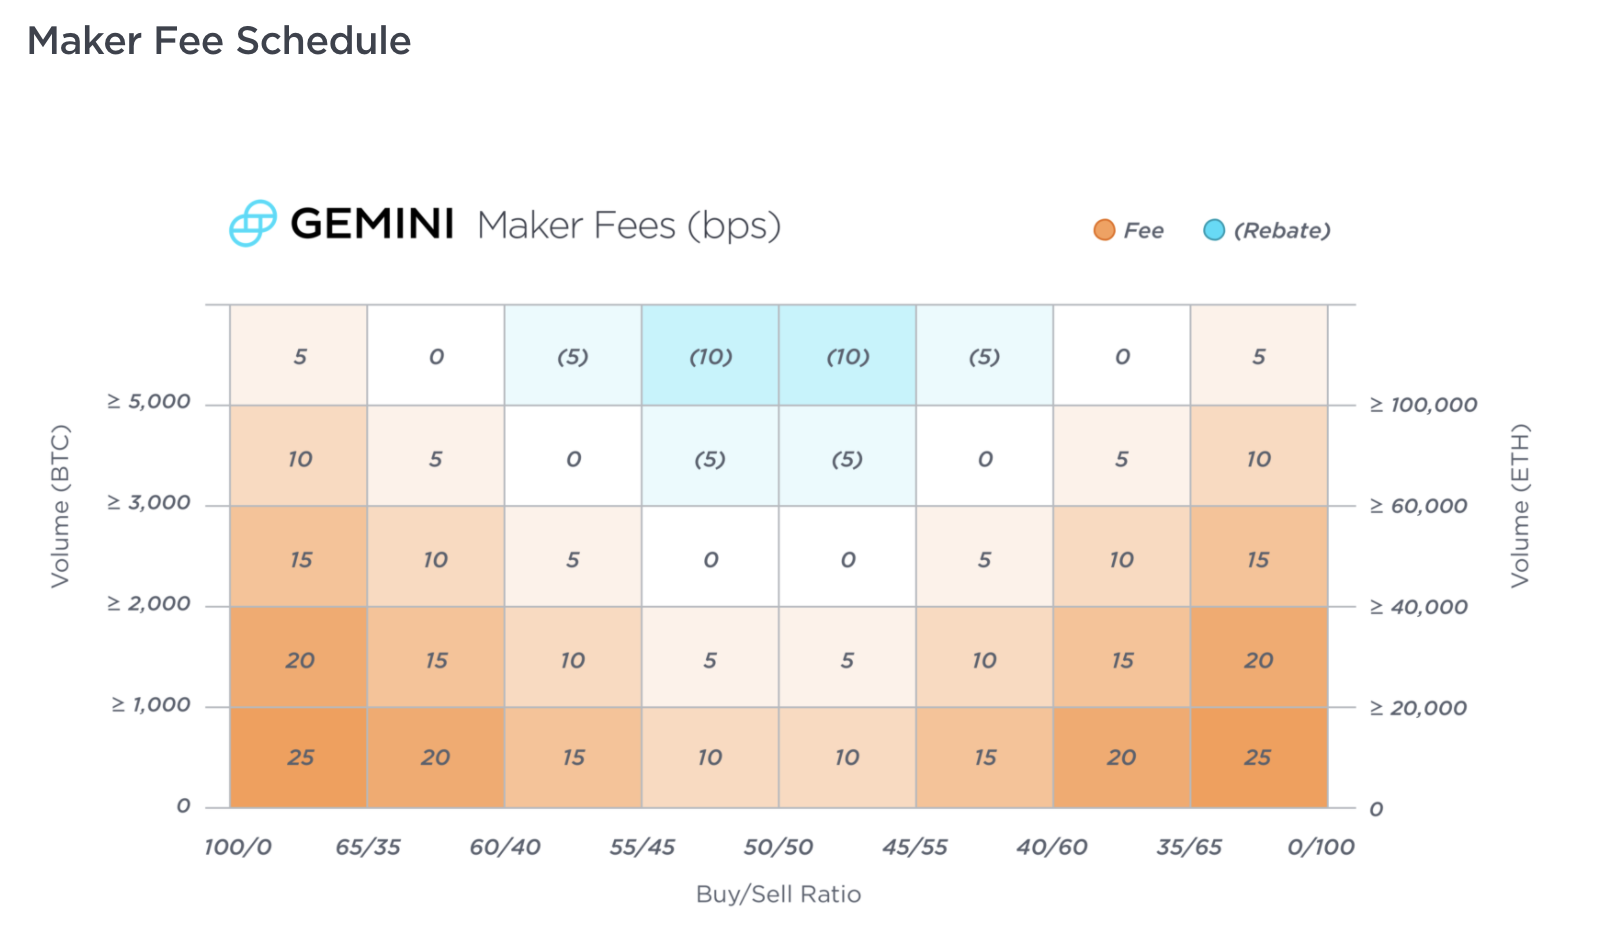 gemini-taker-fee-schedule